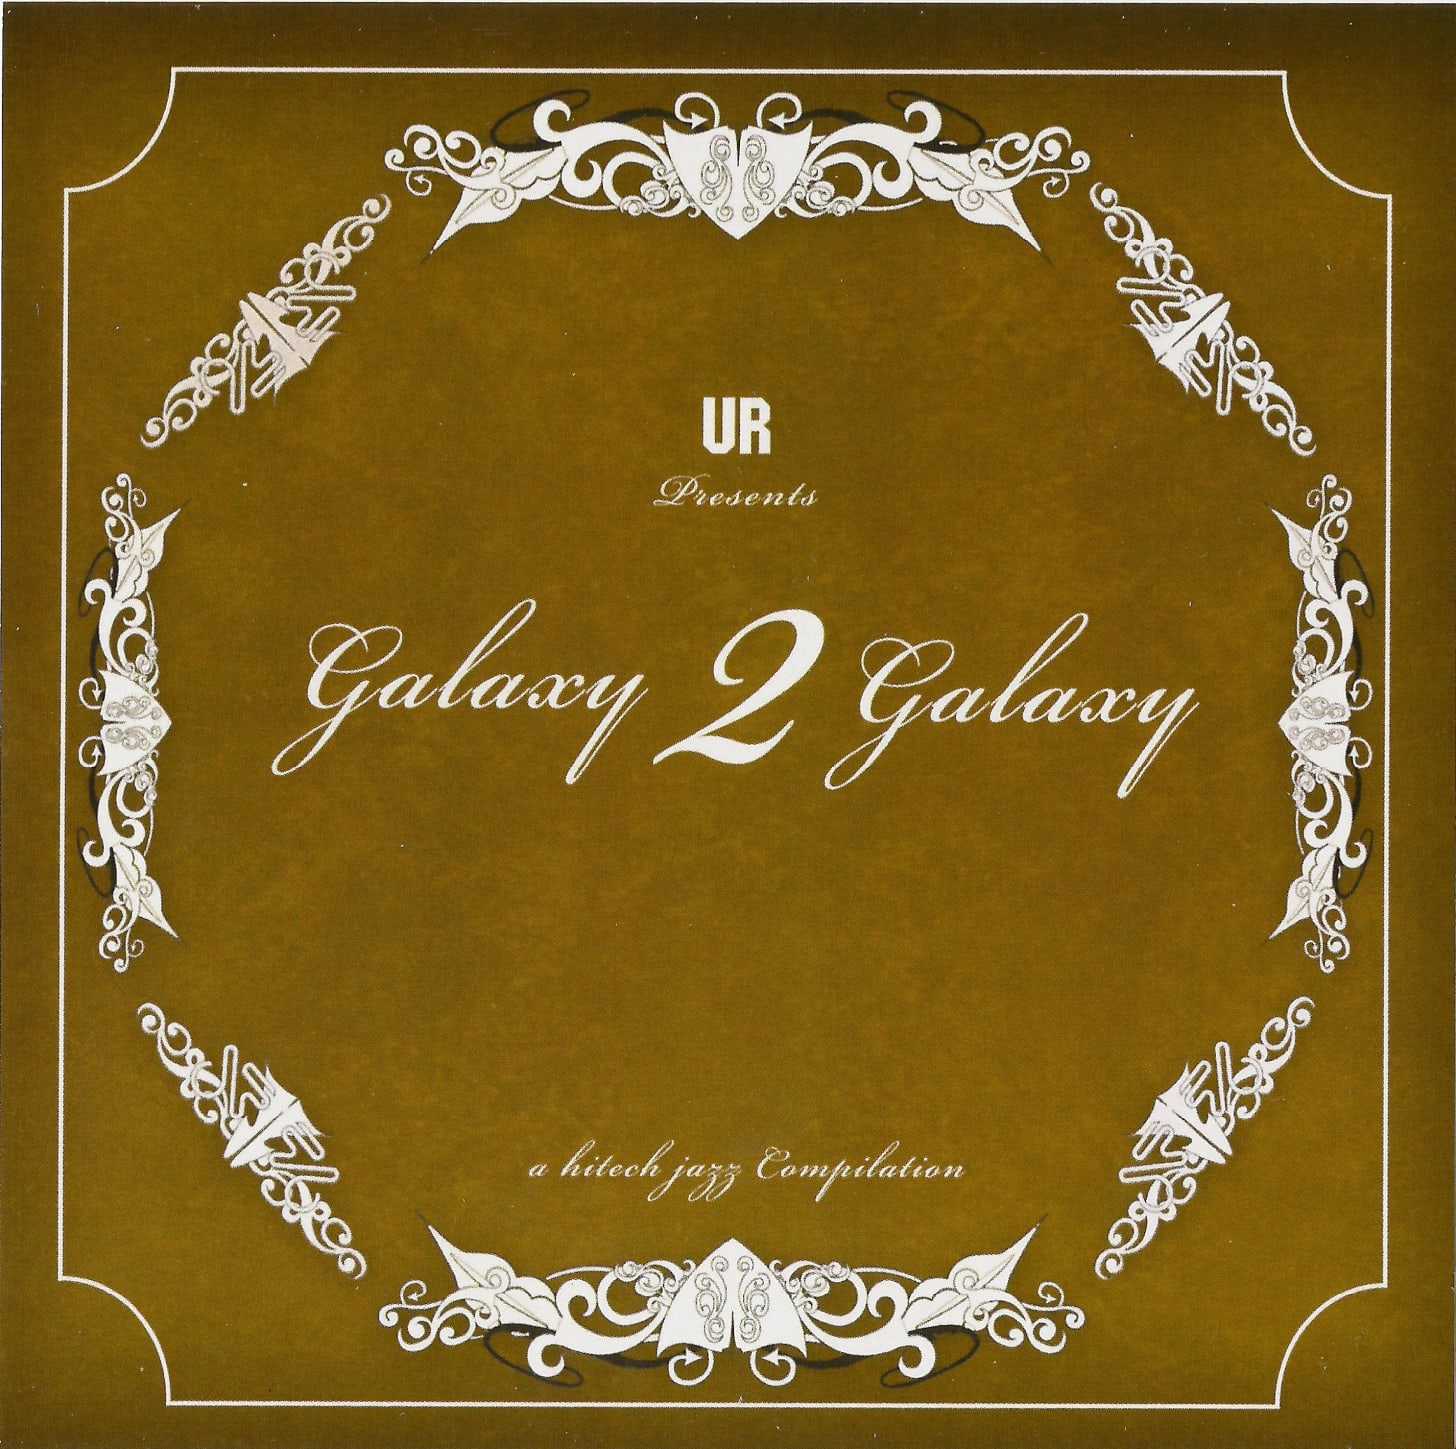 A Hi-Tech Jazz Compilation — Galaxy 2 Galaxy | Last.fm